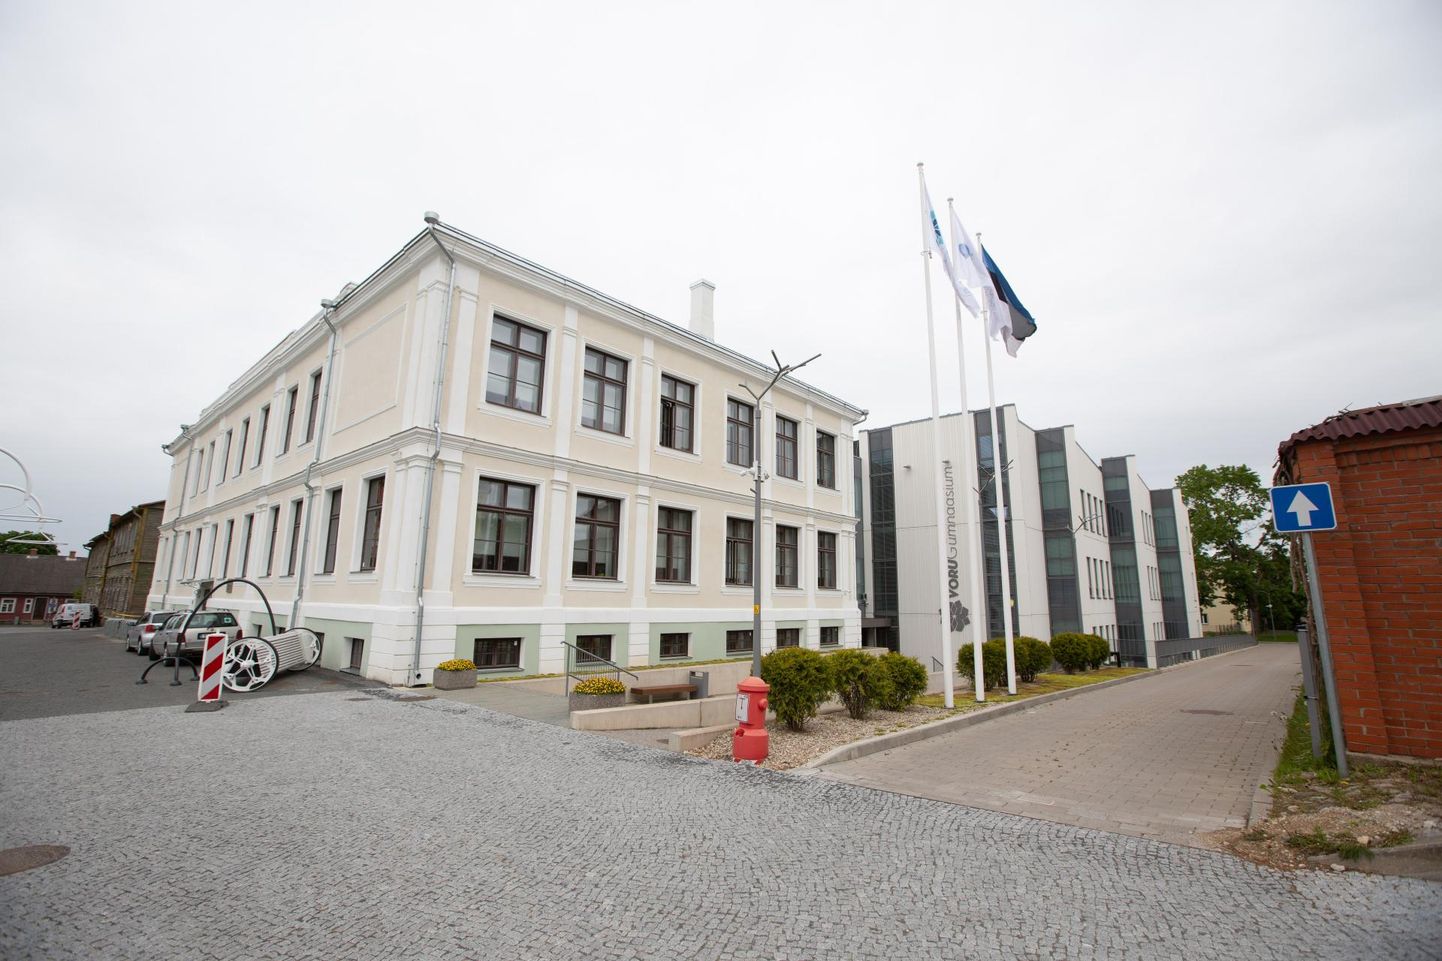 Võru gümnaasium kuulub Eesti parimate koolide sekka.
FOTO: Arvo Meeks